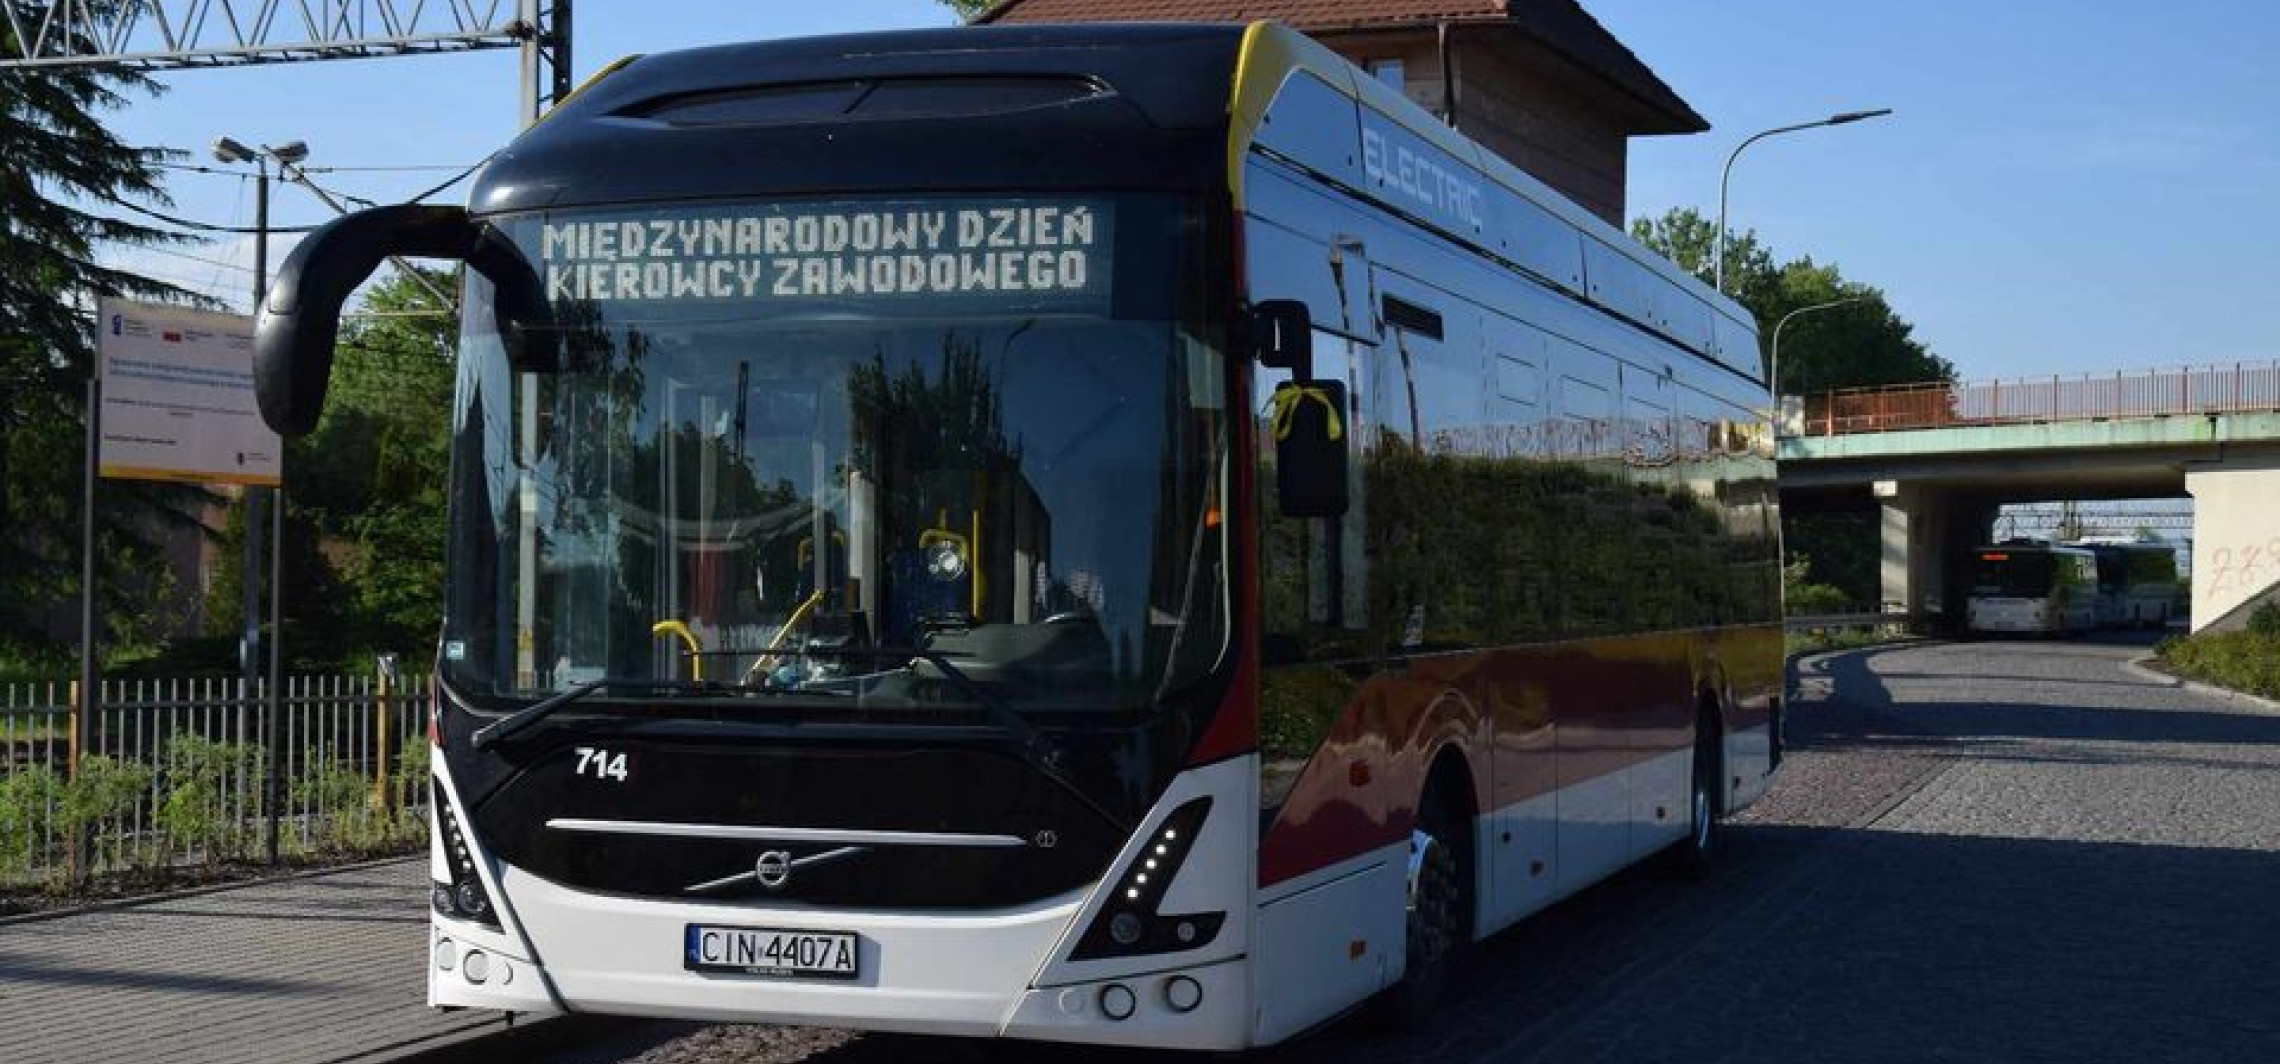 Inowrocław - Przez cały weekend autobusy MPK będą jeździć z żółtą wstążką